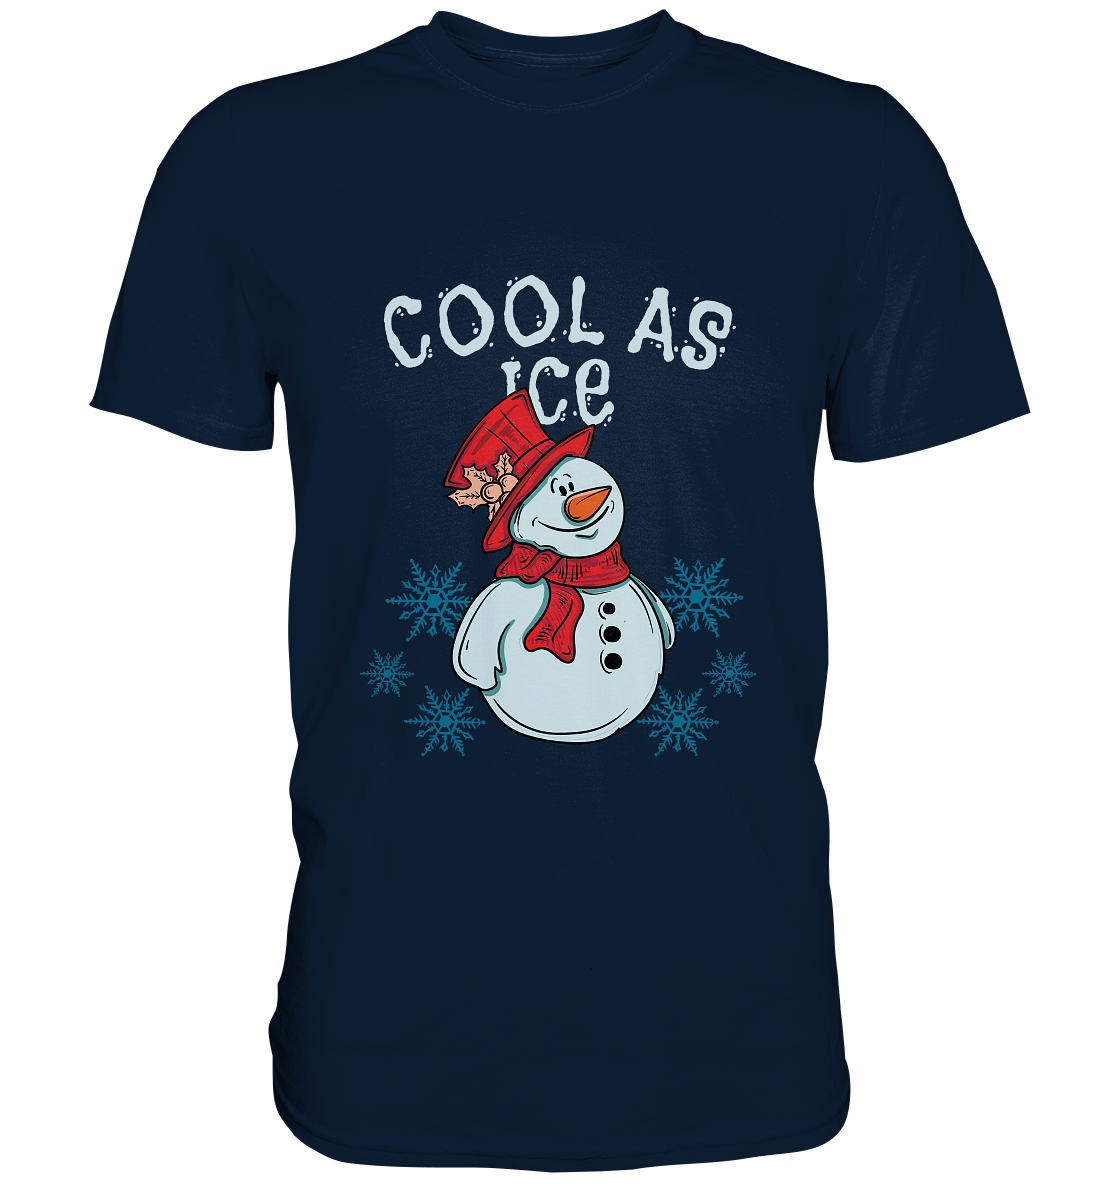 Cool as ice. Winter Schneemann - Unisex Premium Shirt